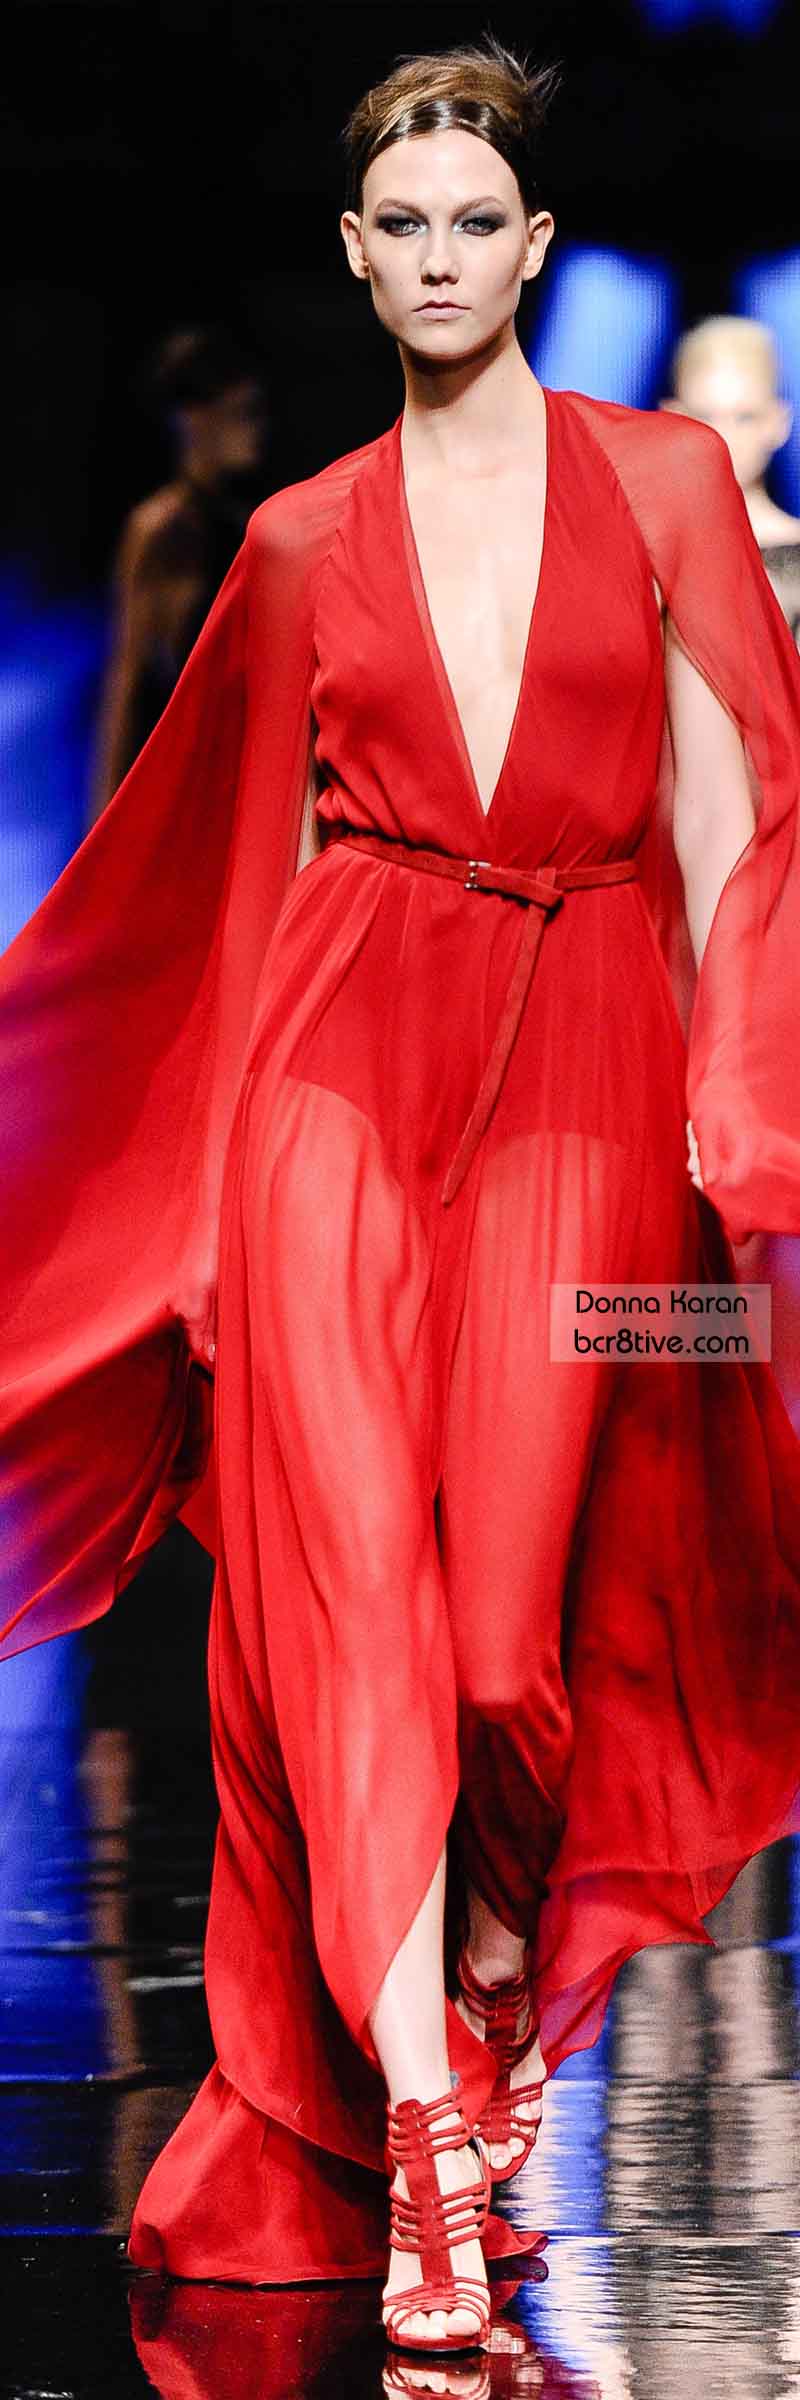 Donna Karan FW 2014 #NYFW